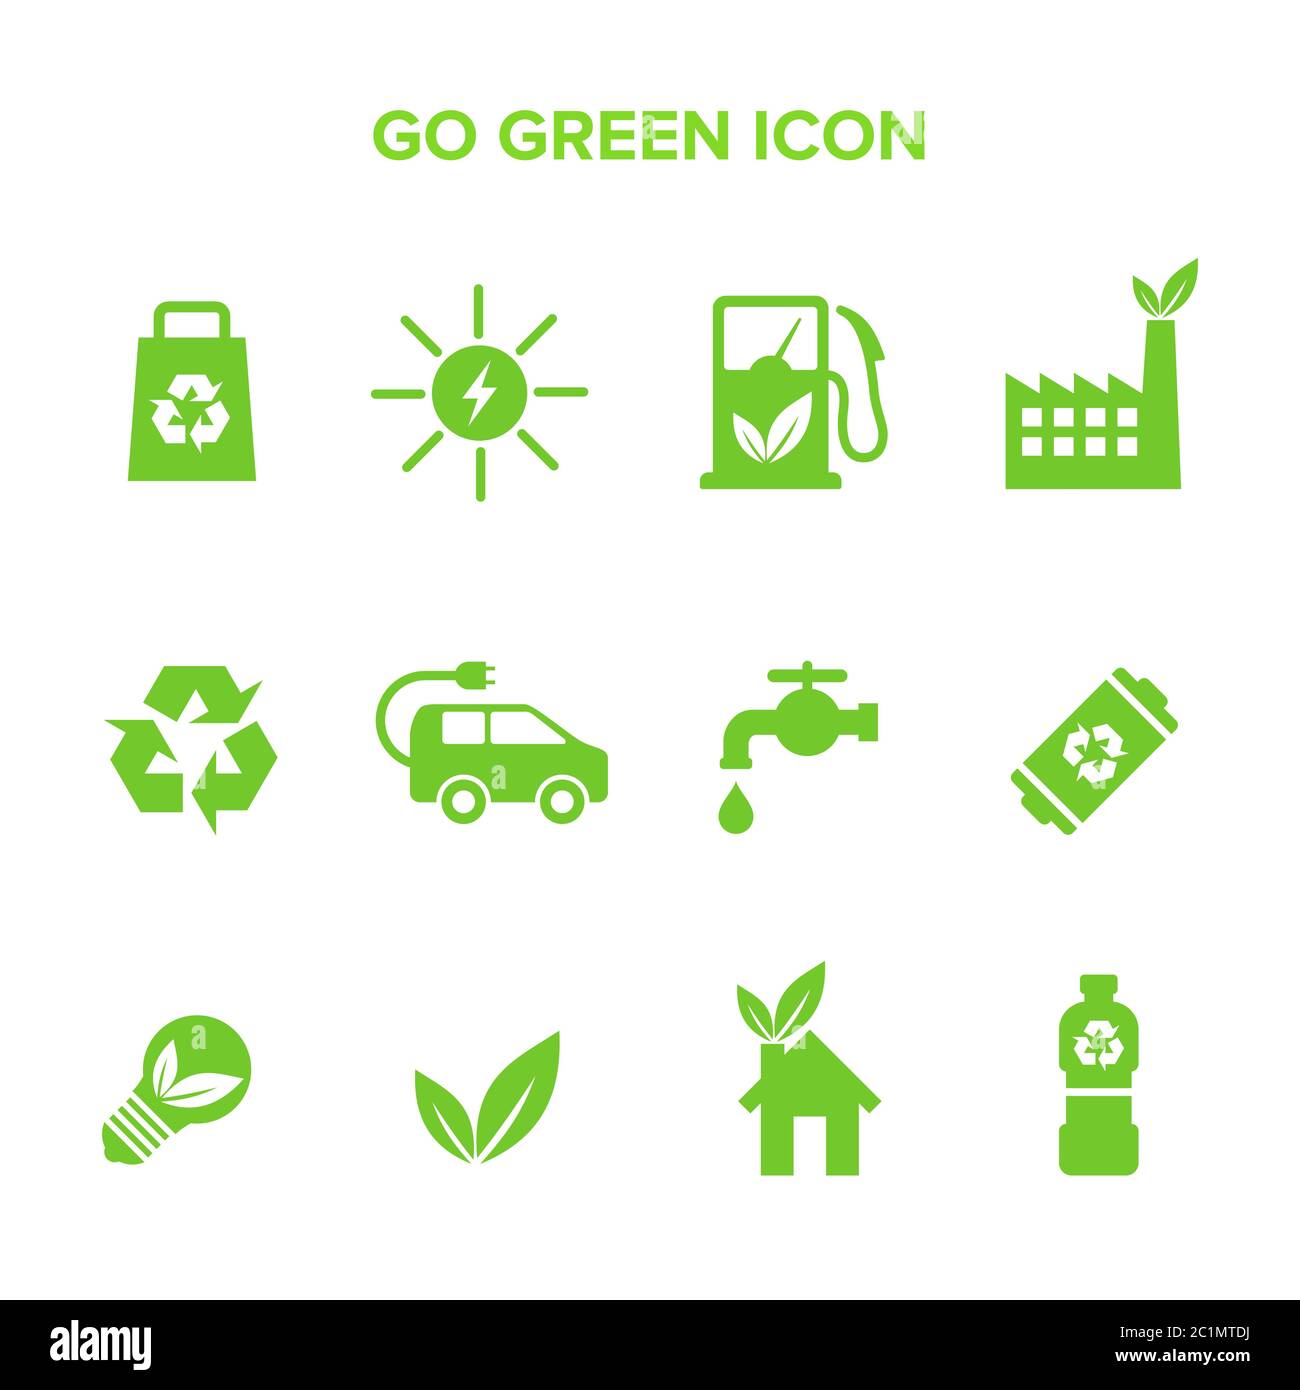 Eine Sammlung von Vektor-Symbolen aus der GO Green Kampagne Bewegung. Geeignet für Design-Elemente der Bewegung, um die Natur zu erhalten, reduzieren Verschmutzung. Stock Vektor